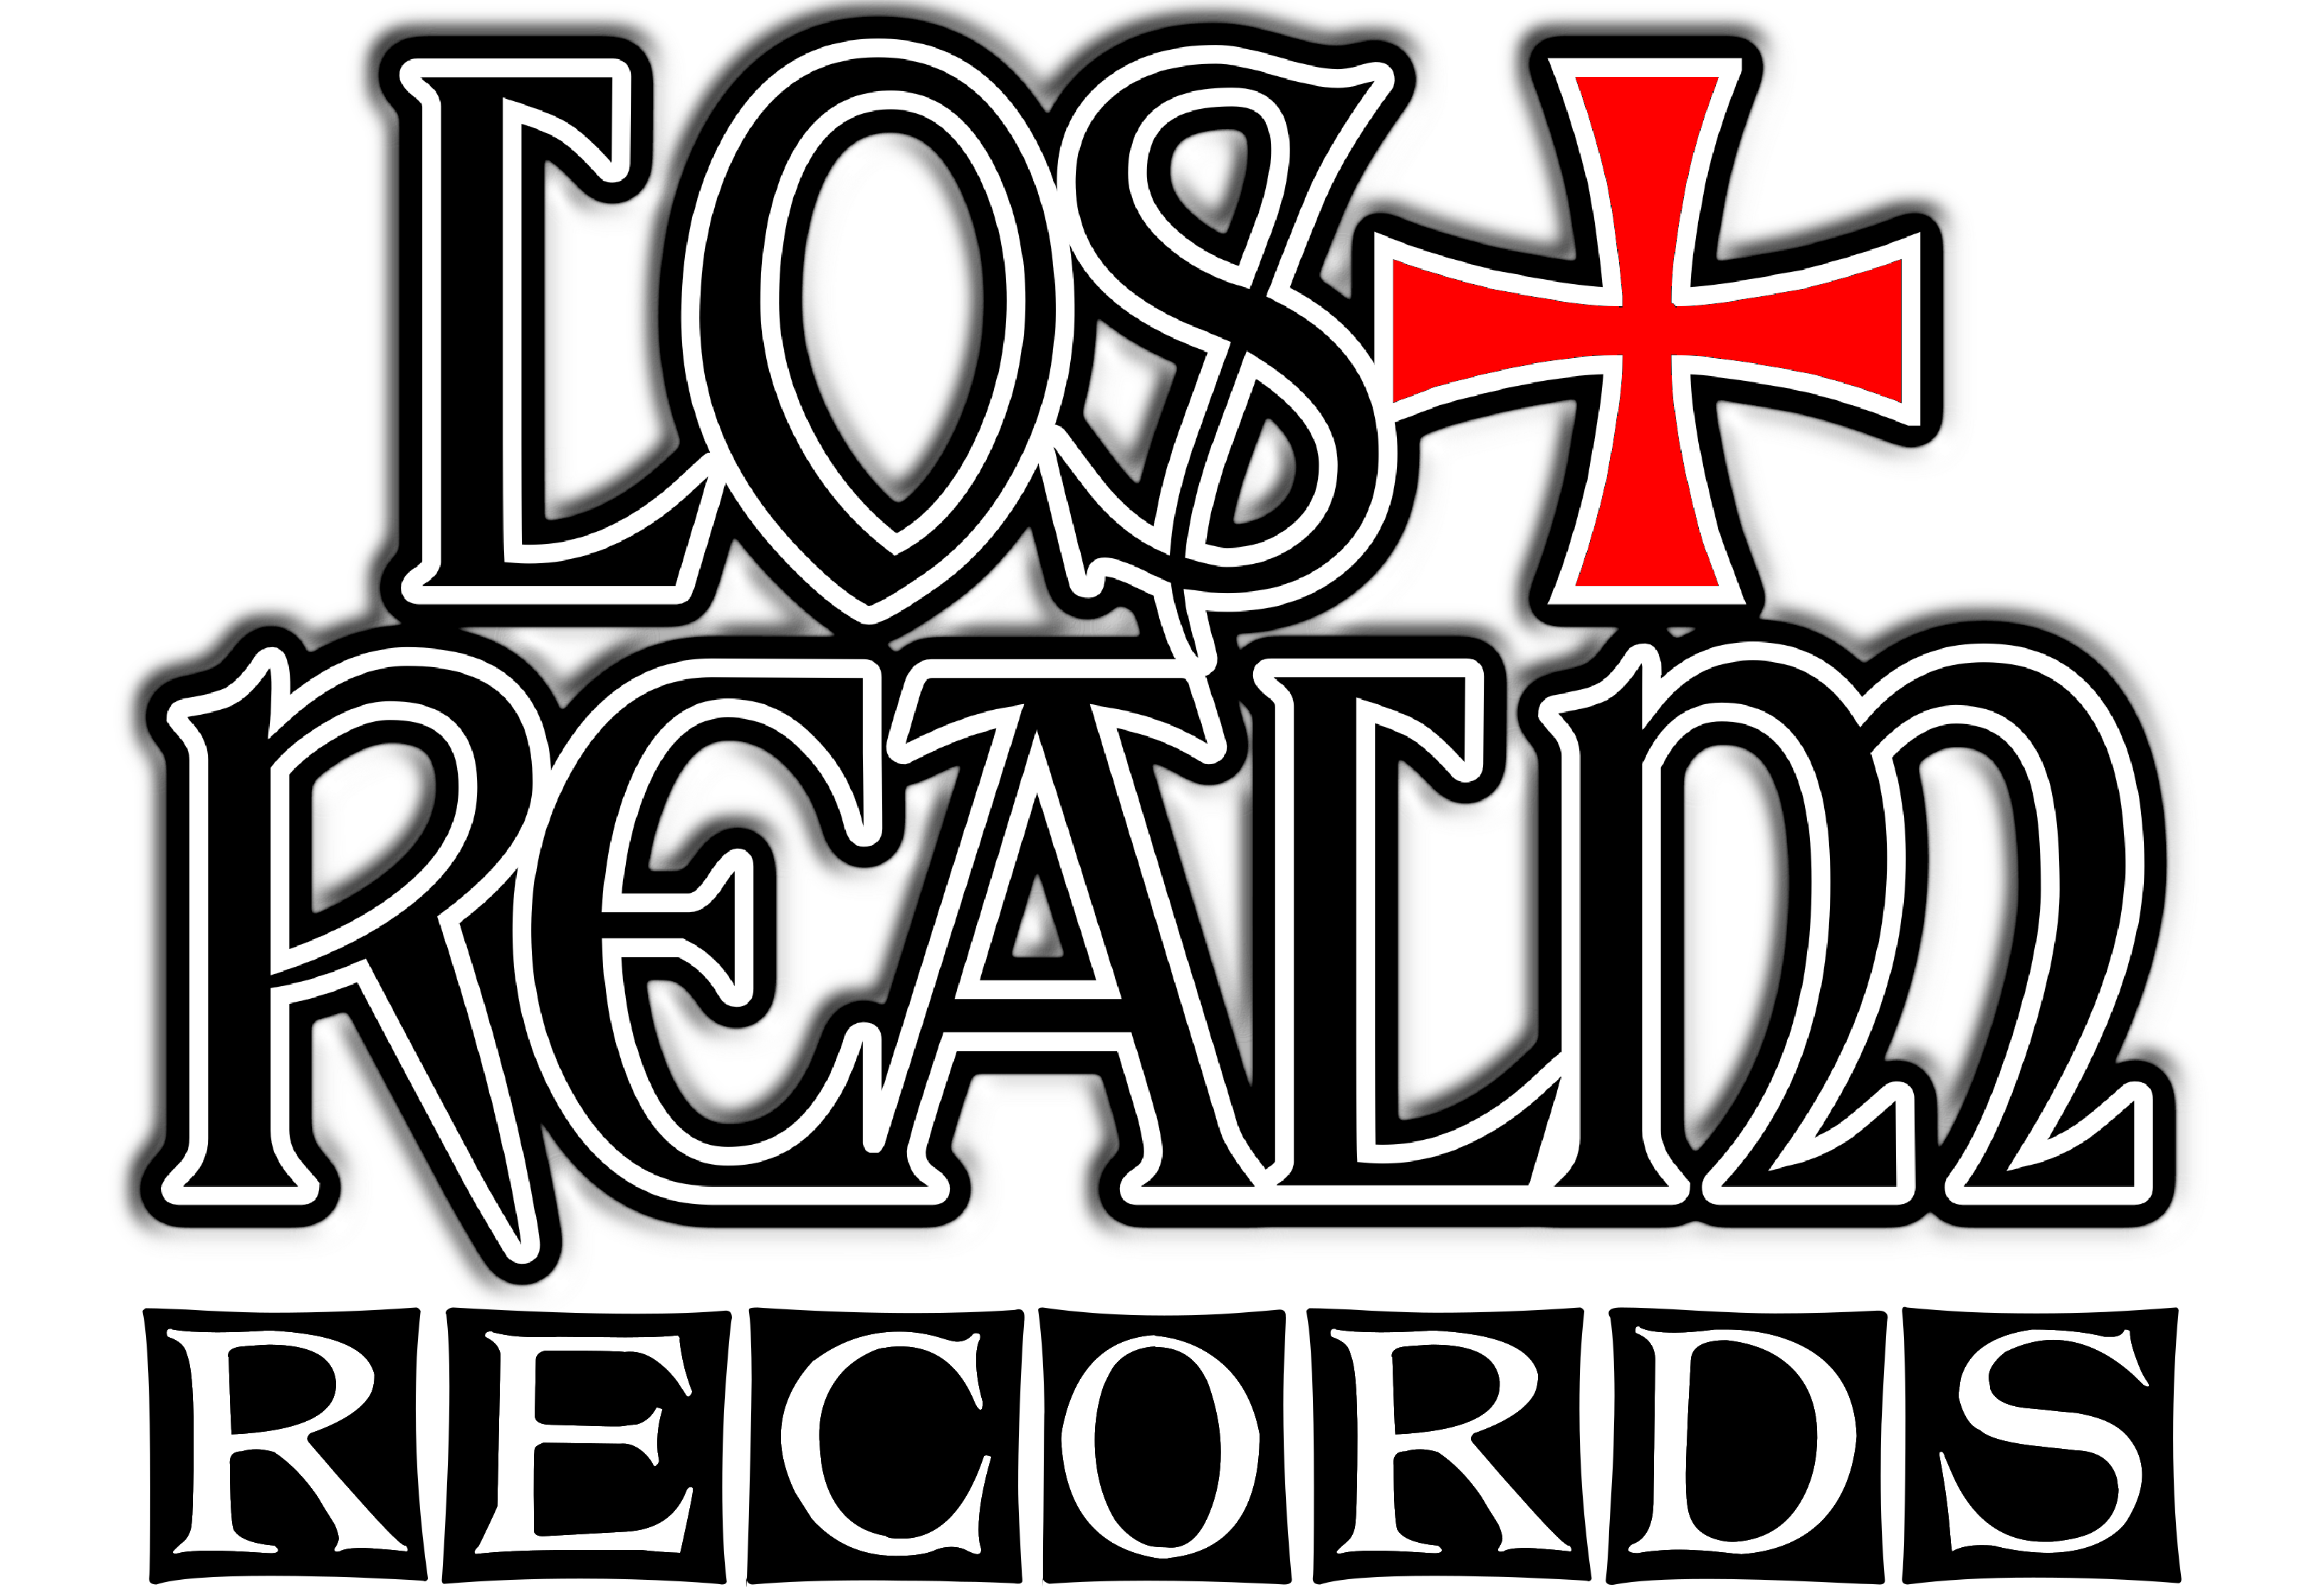 Lost Realm Records